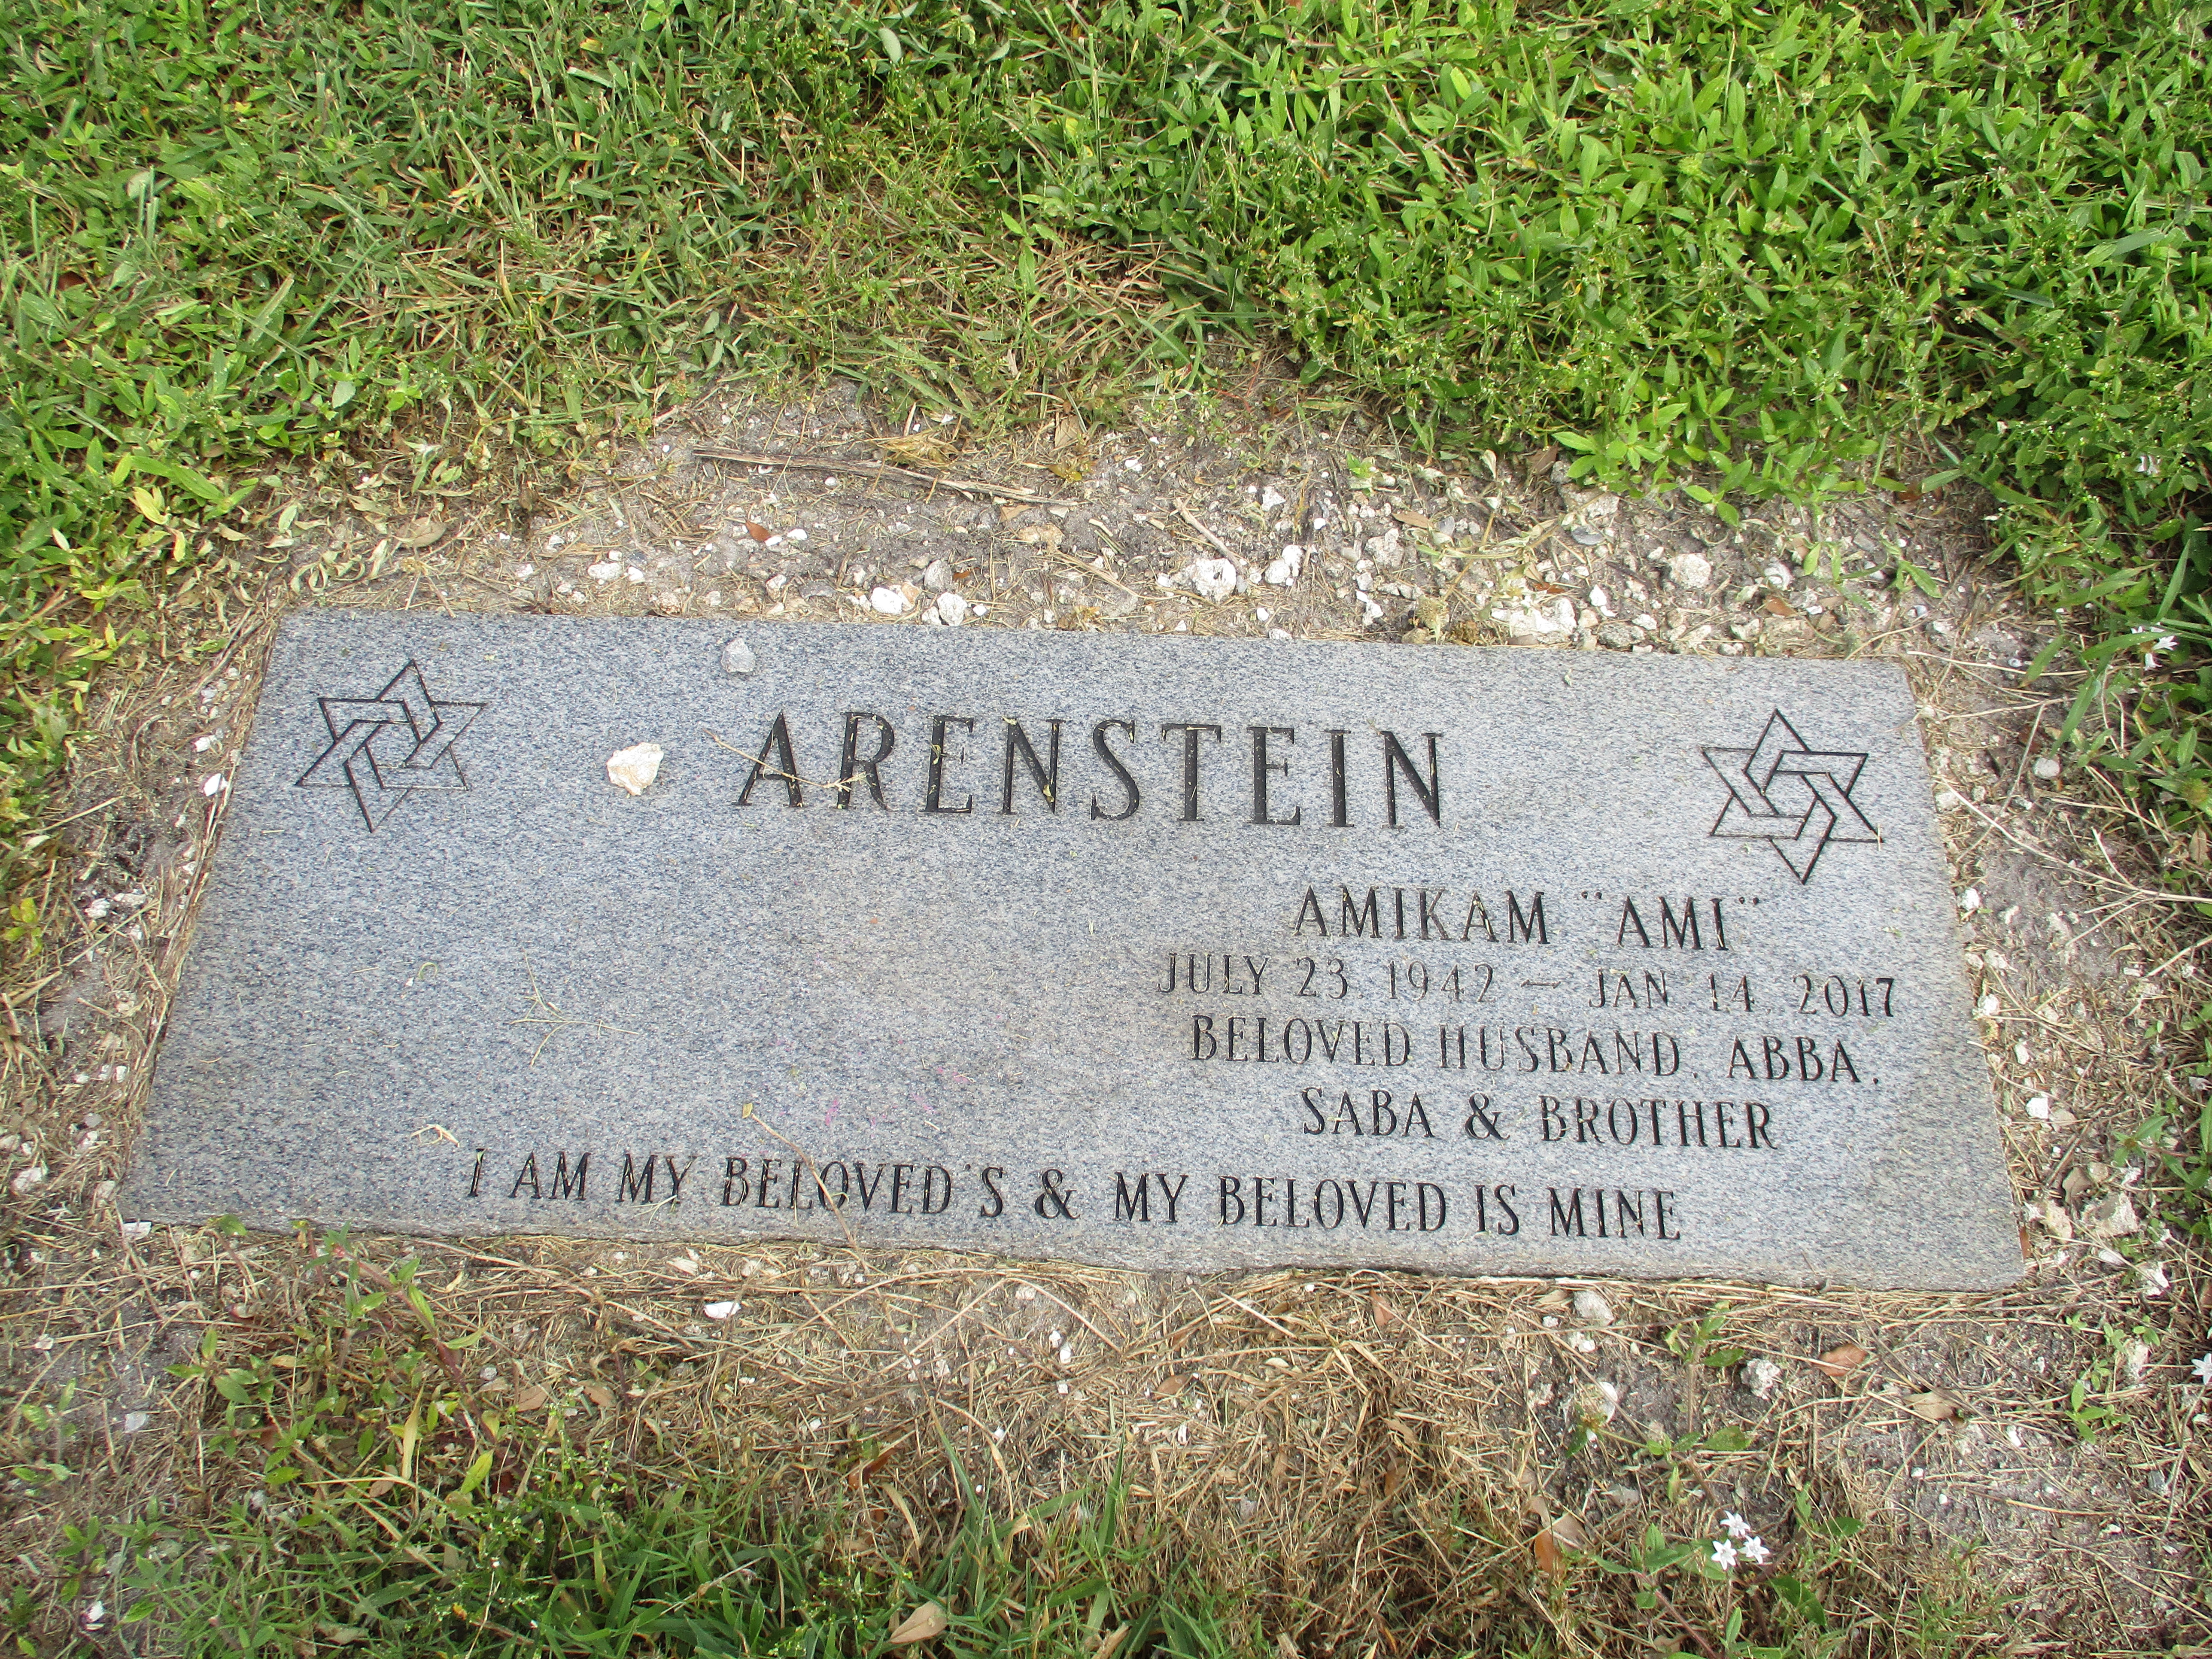 Amikam "Ami" Arenstein